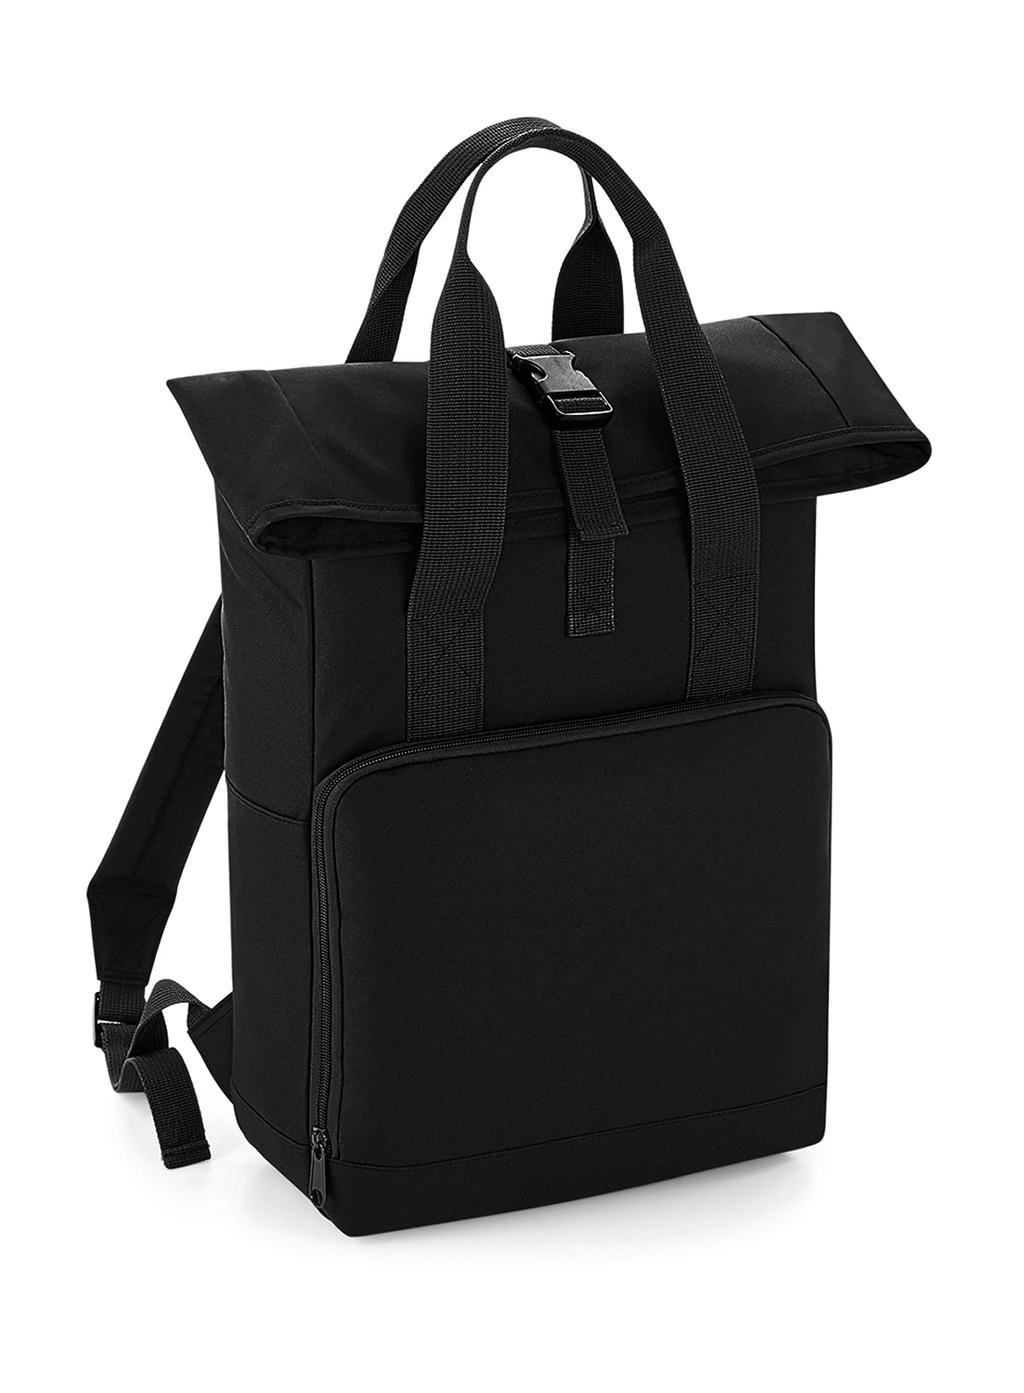 Twin Handle Roll-Top Backpack zum Besticken und Bedrucken in der Farbe Black mit Ihren Logo, Schriftzug oder Motiv.